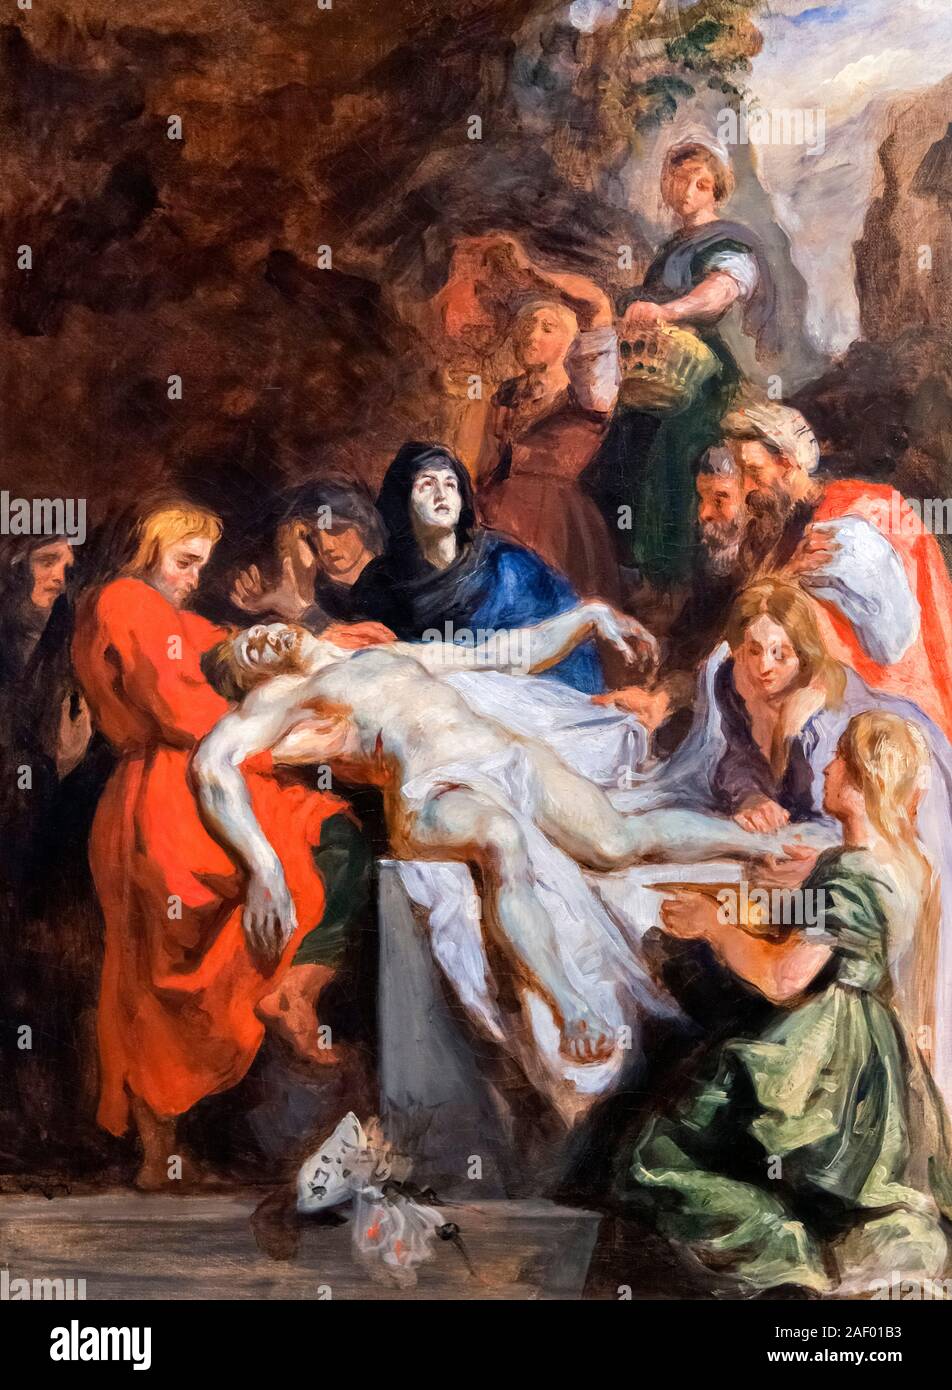 La mise au tombeau (après Peter Paul Rubens) d'Eugène Delacroix (1798-1863), huile sur toile, 1836 Banque D'Images